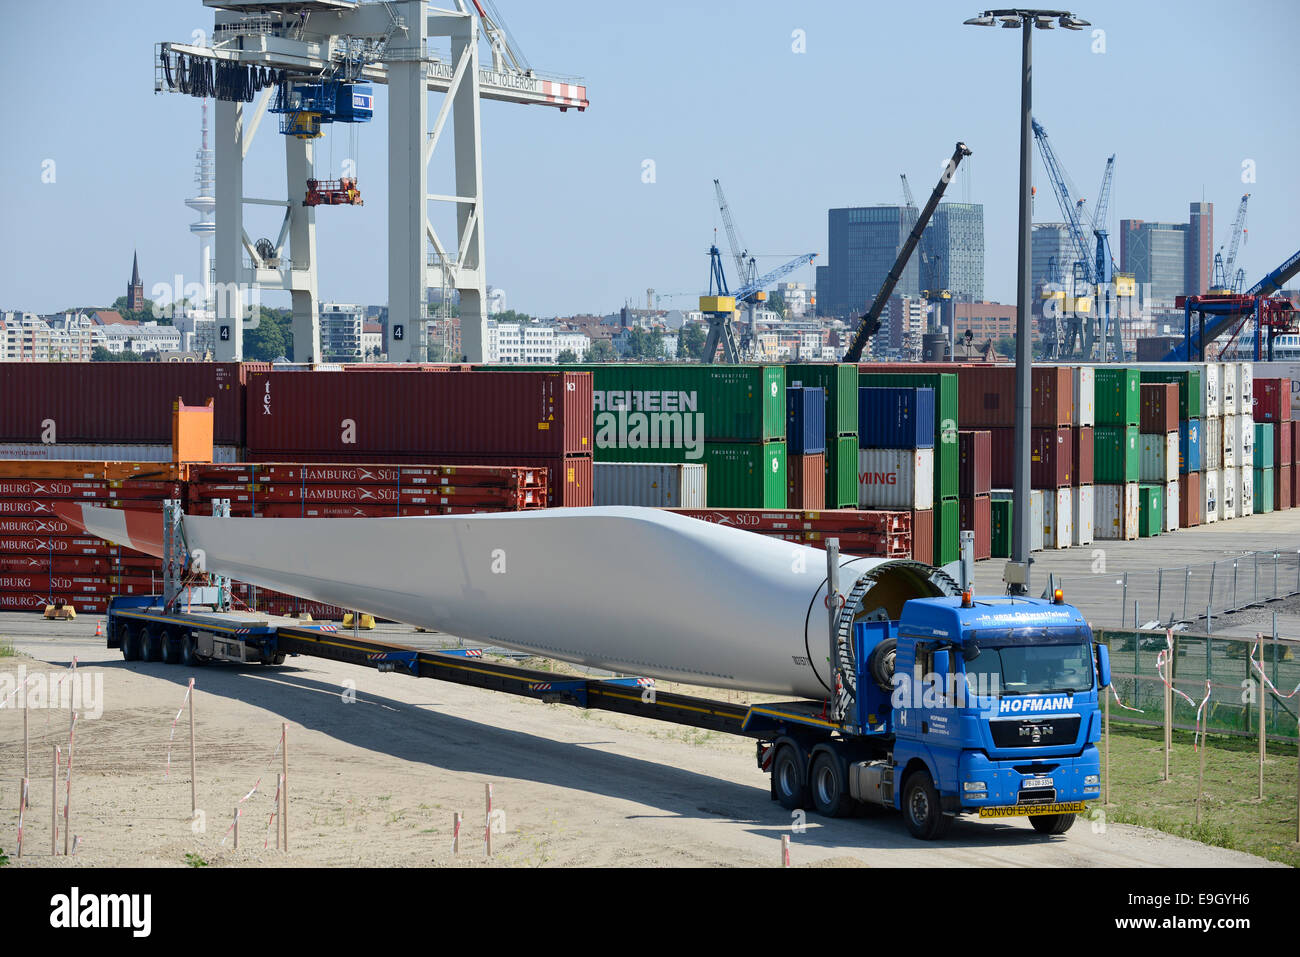 Allemagne Hambourg, le transport par camion pour les nouvelles pales de rotor d'éoliennes Nordex de havre en construction site Banque D'Images